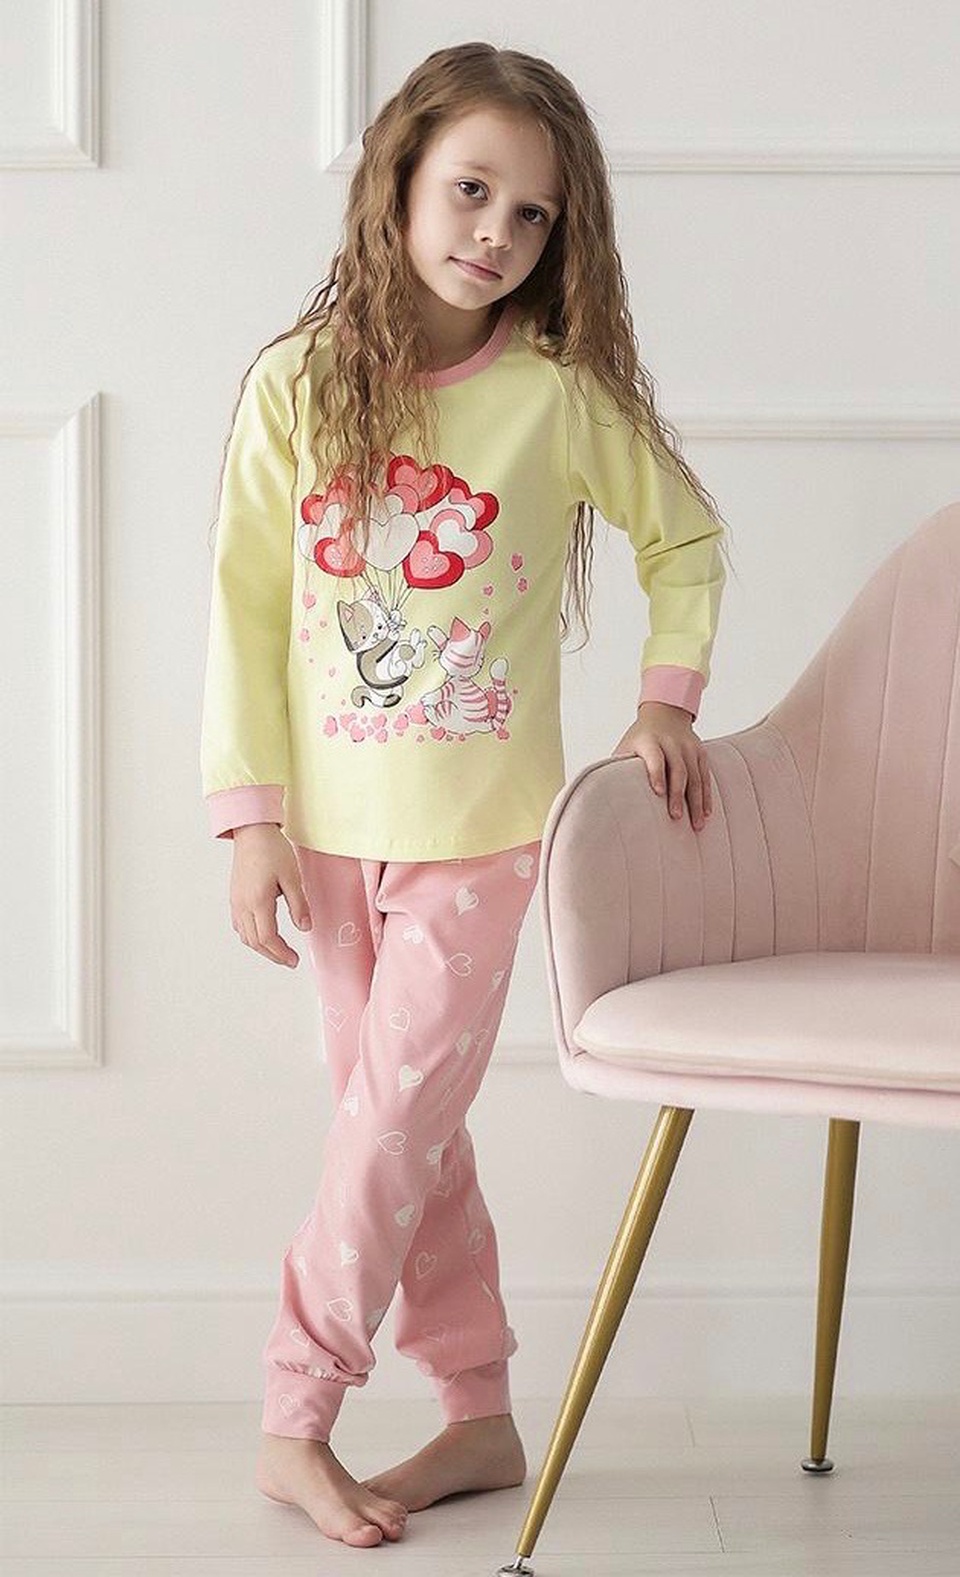 Пижама для девочки - 850 ₽, заказать онлайн.